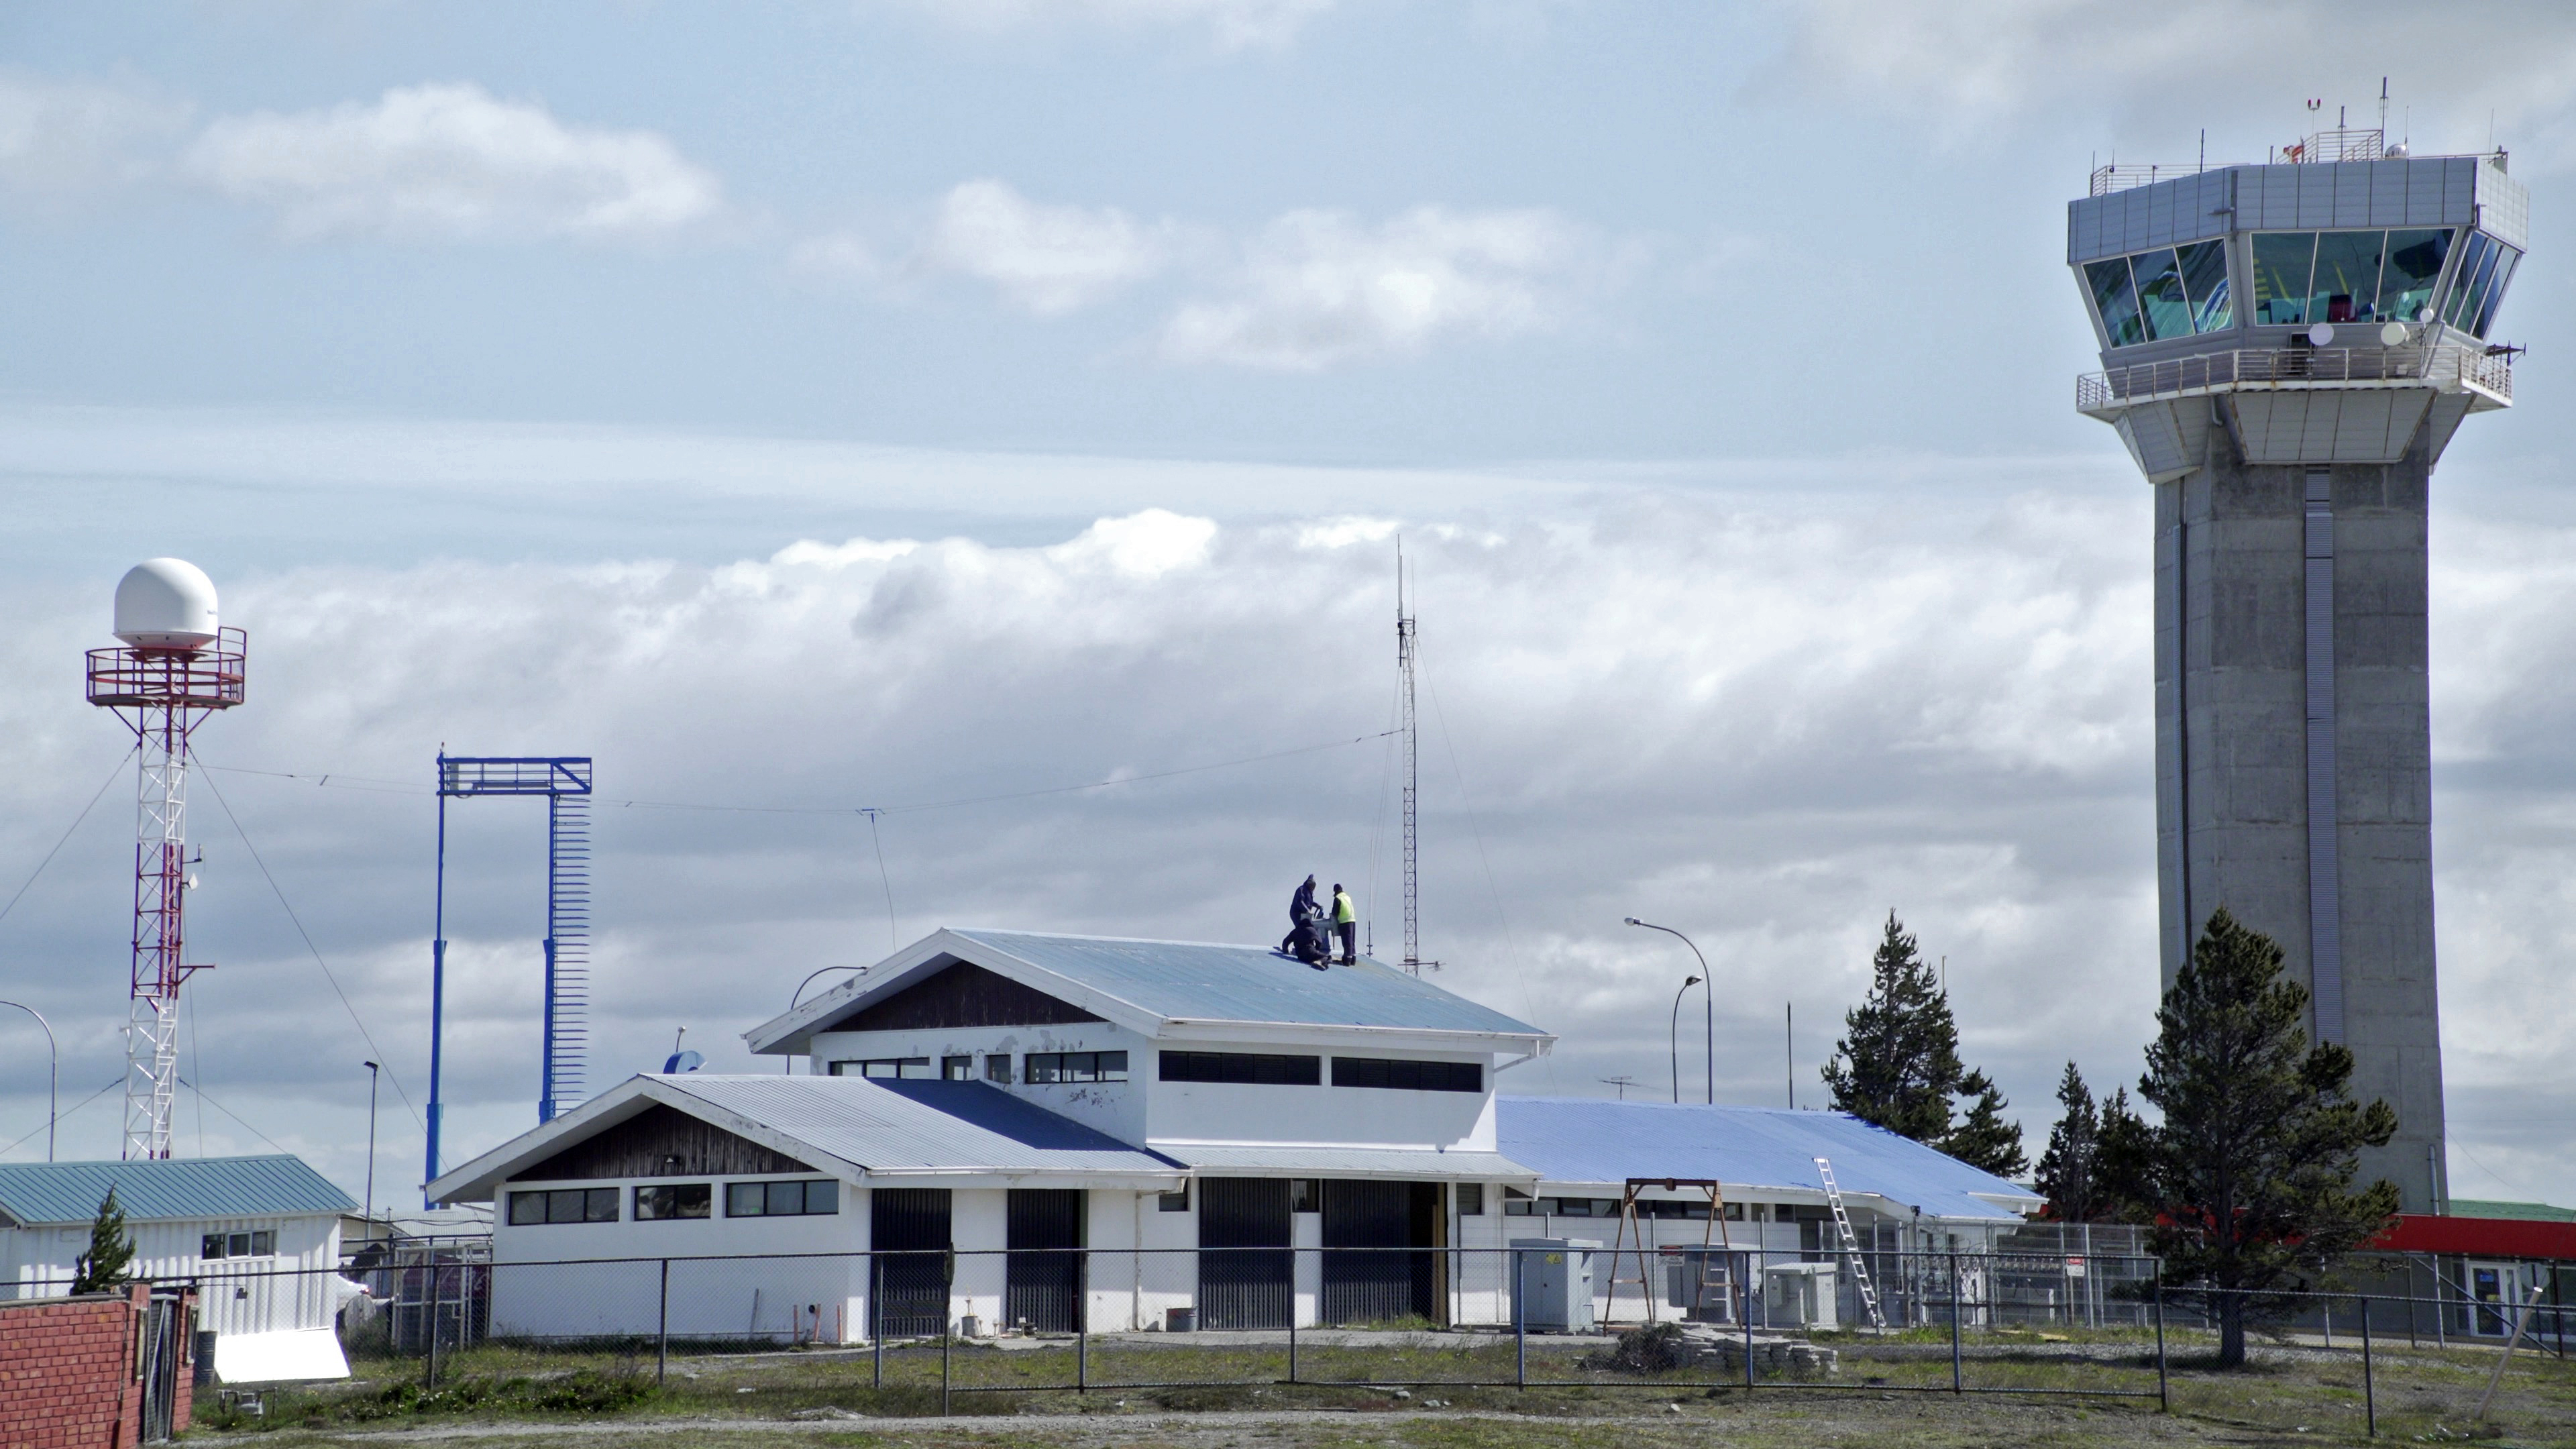 Búsqueda de avión militar chileno continúa sin arrojar rastros